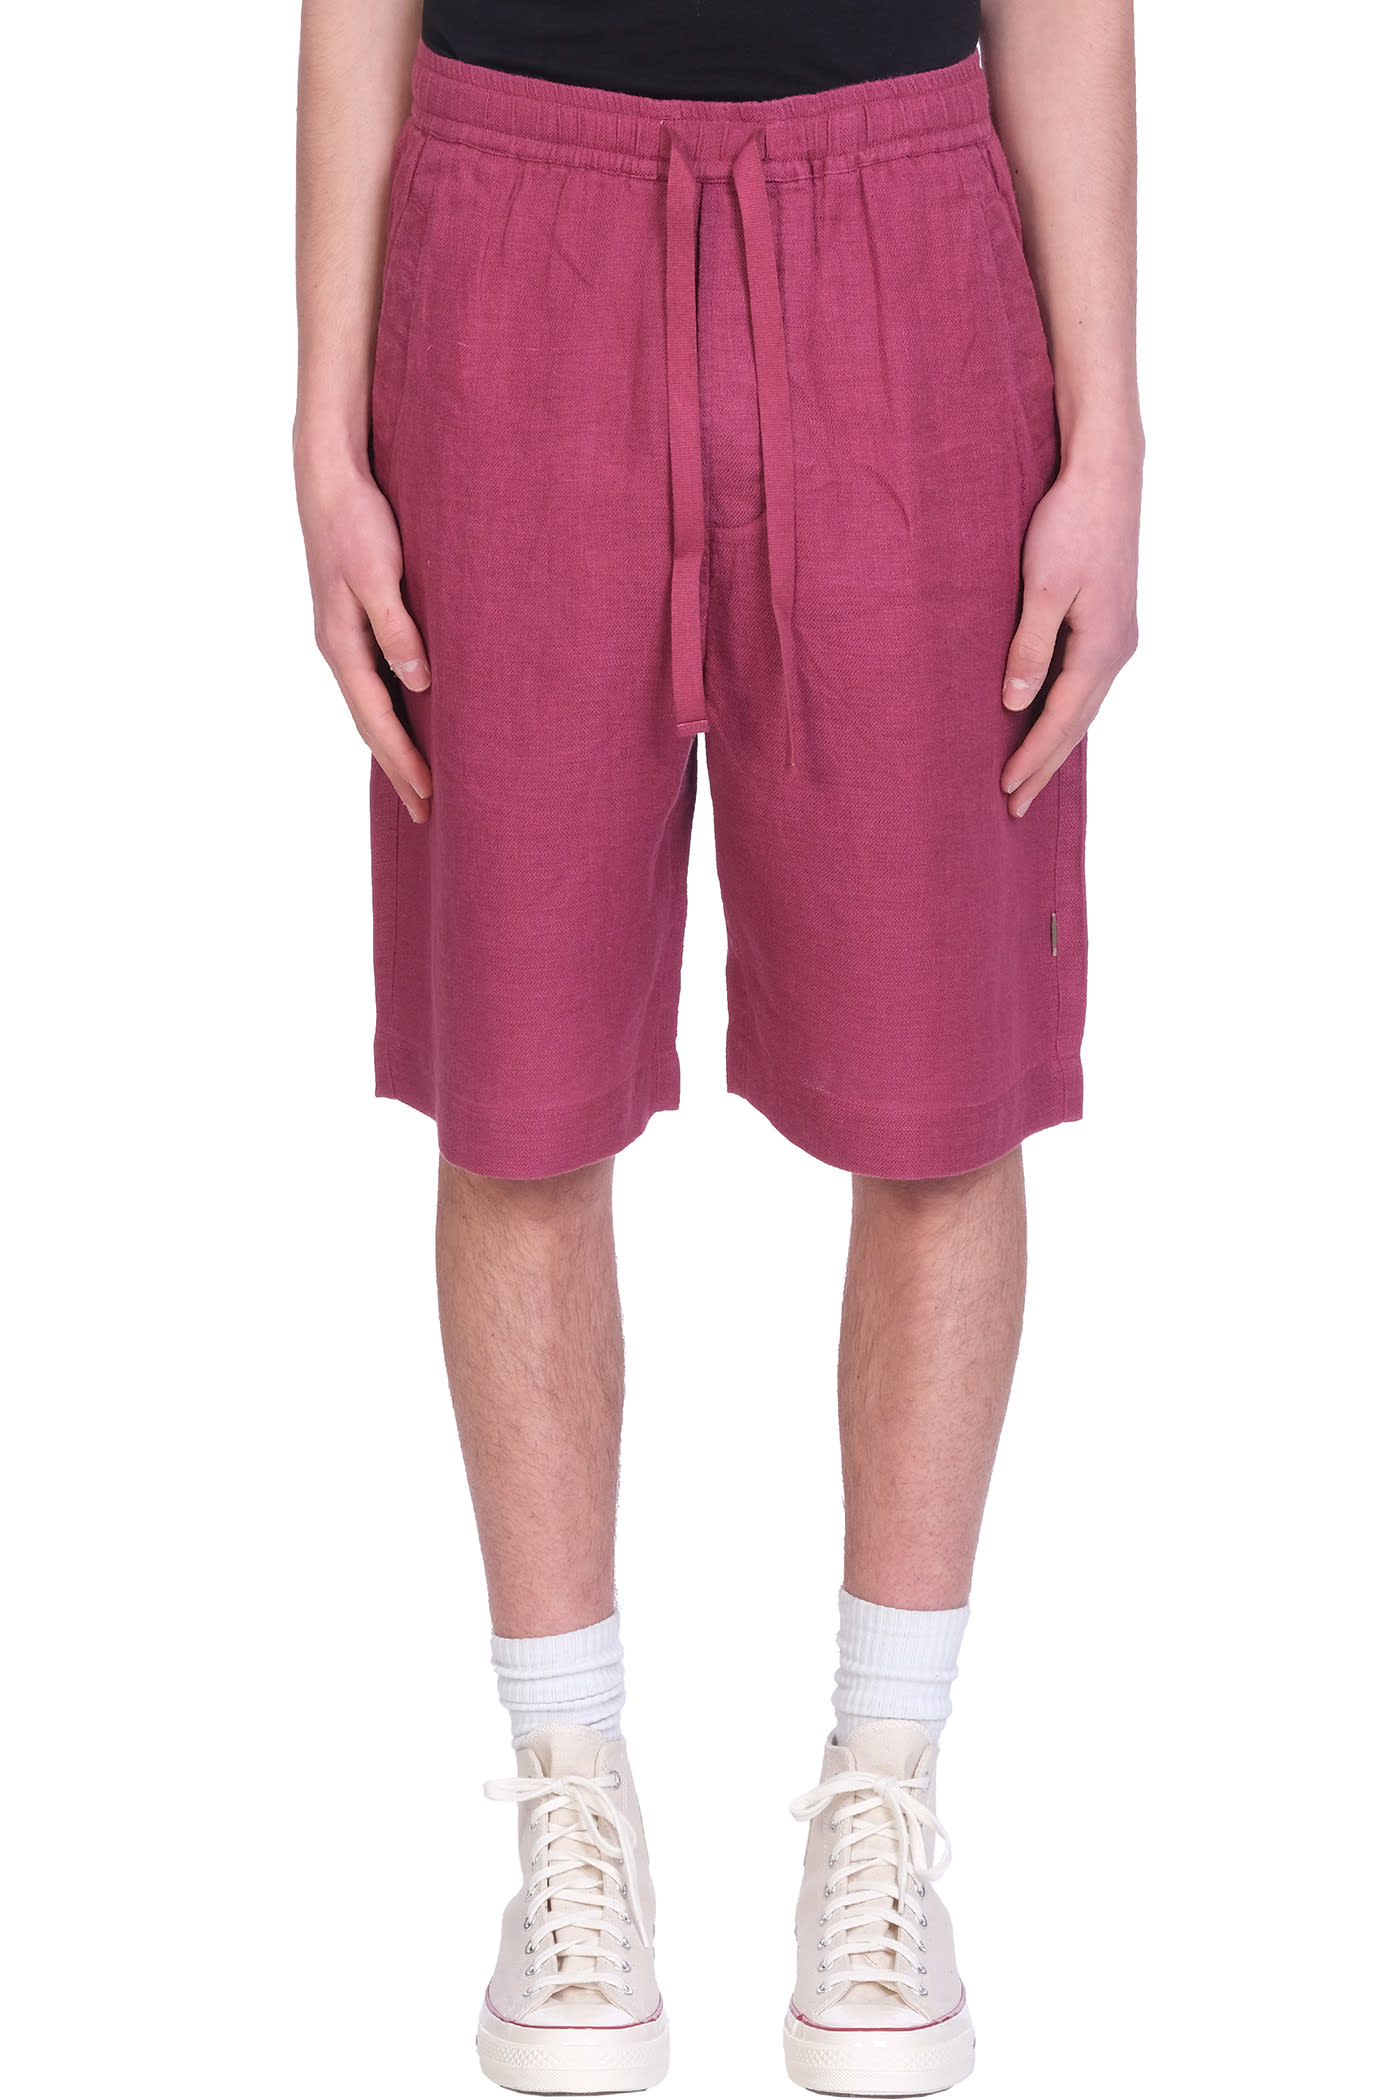 Maharishi Shorts In Red Cotton